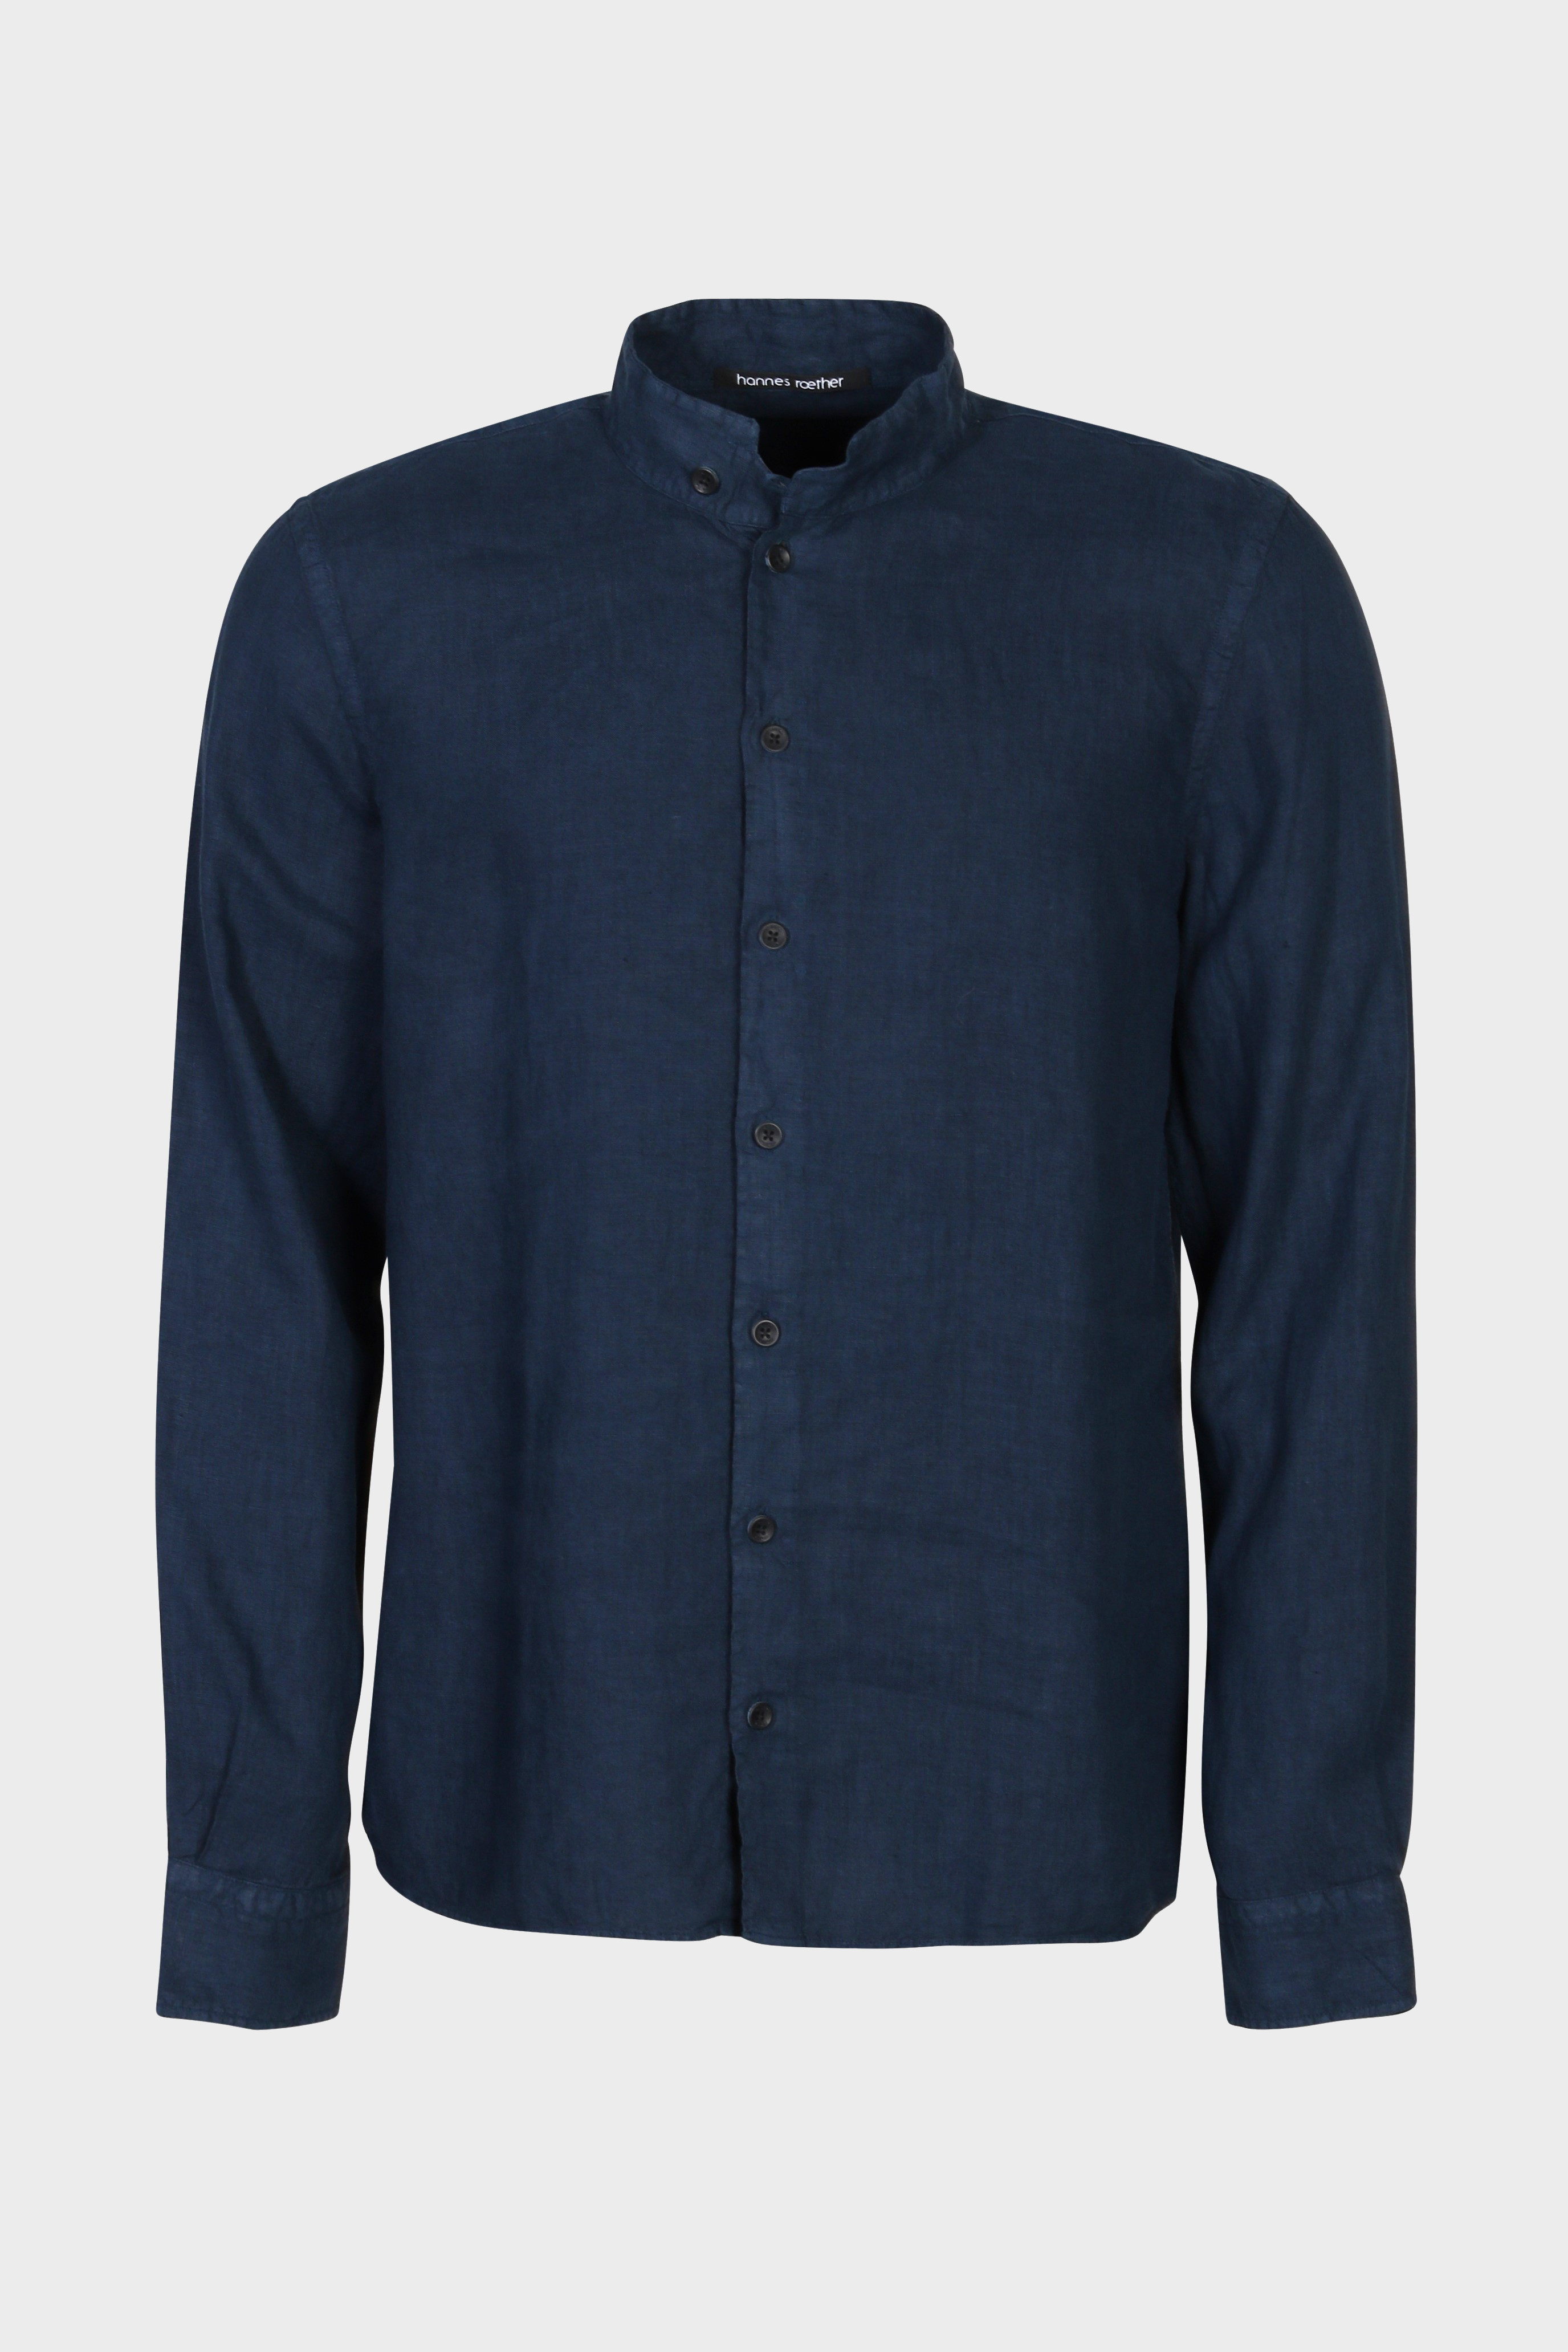 HANNES ROETHER Linen Shirt in Dark Blue 2XL